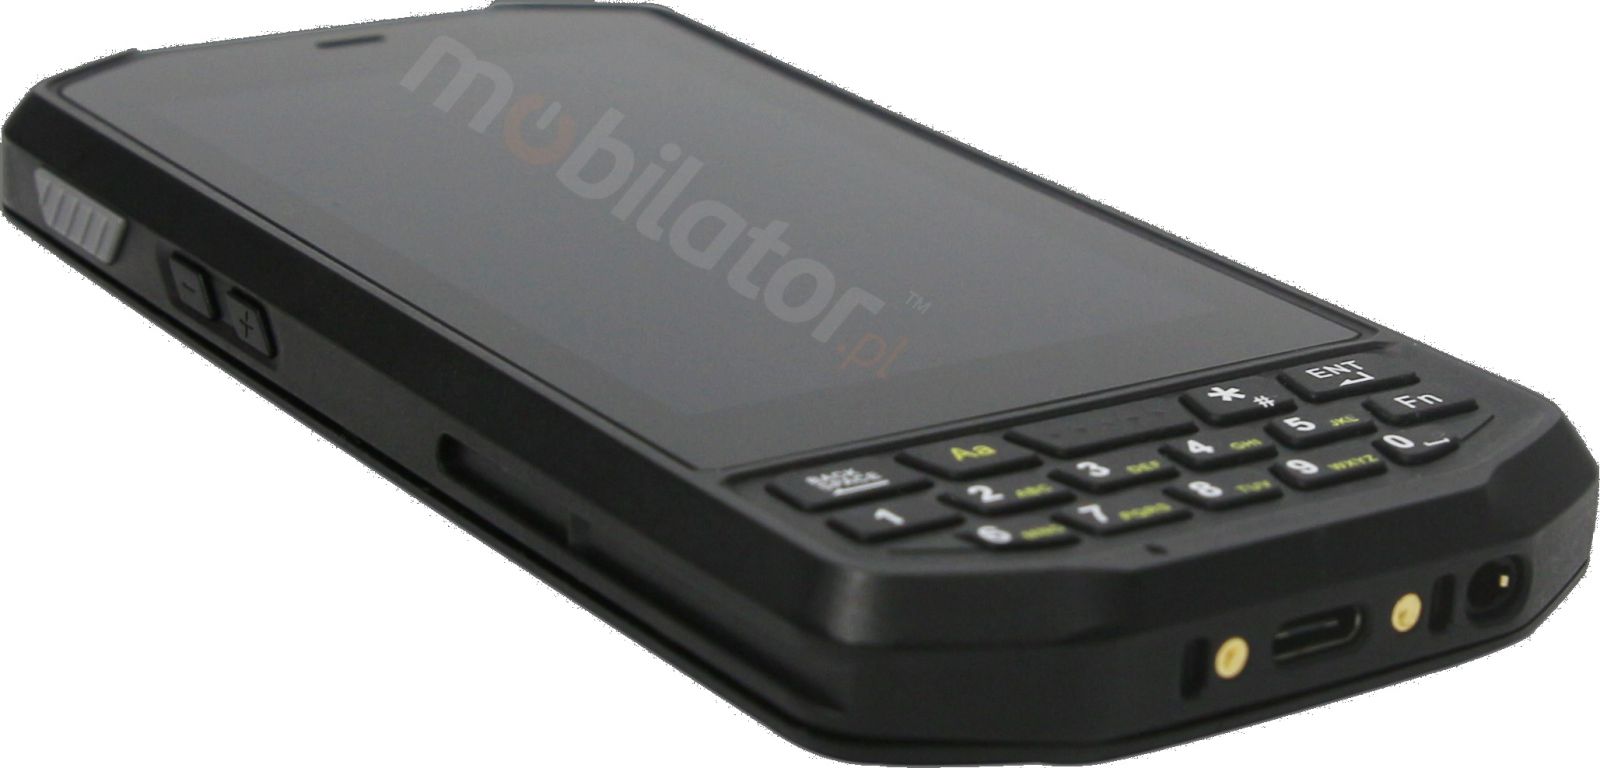 Mobipad Qxtron 4100 v.3 - Przemysowy (IP65 + MIL-STD-810G) terminal danych ze skanerem kodw UHF oraz 2D Zebra 2100, pamici 4GB RAM i dyskiem 64GB.